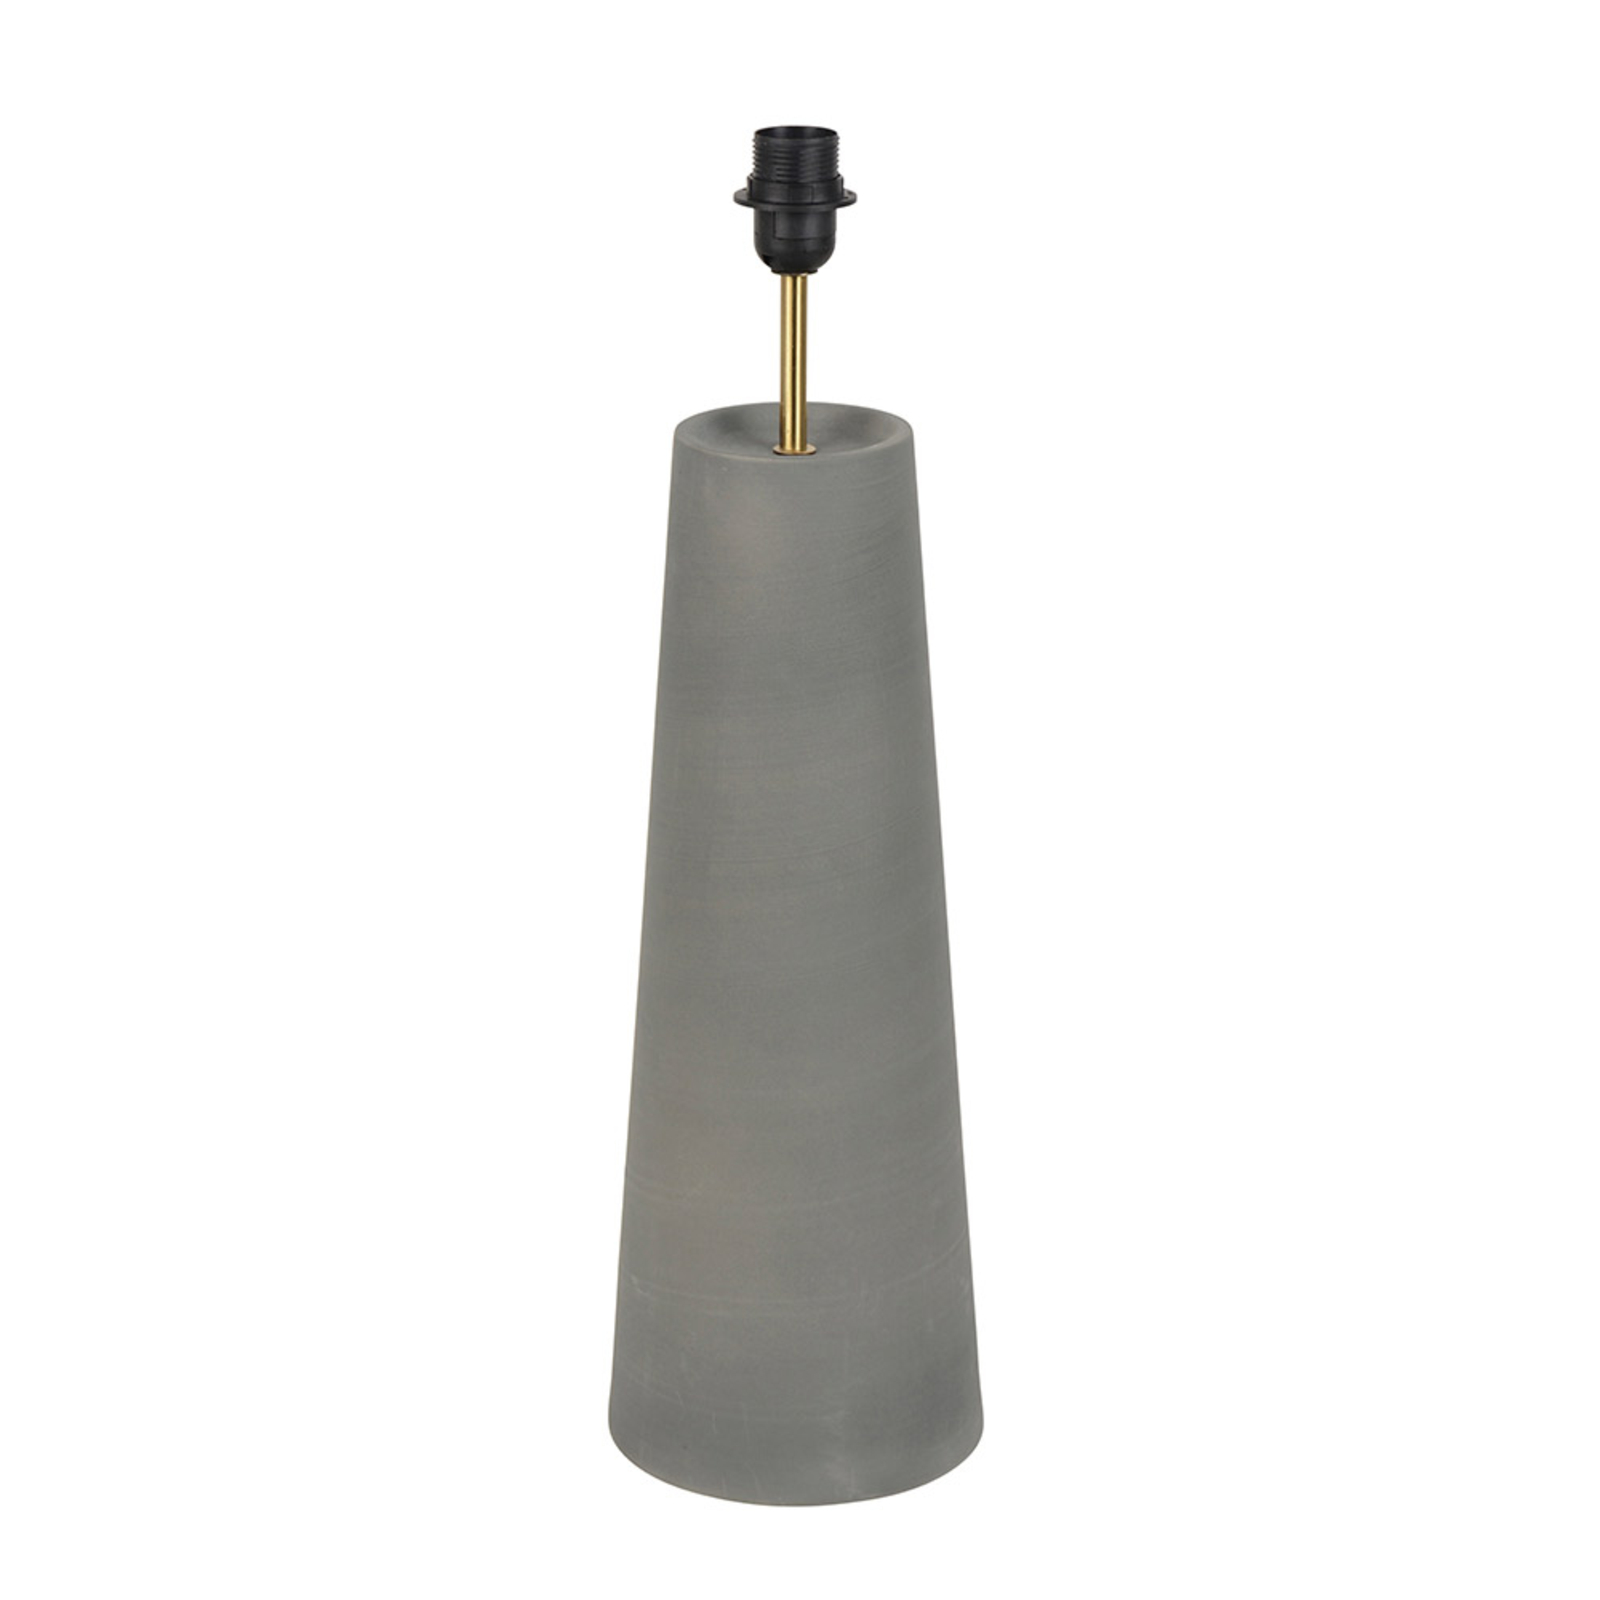 MARKET SET Cosiness-bordlampe, keramikfod, grå